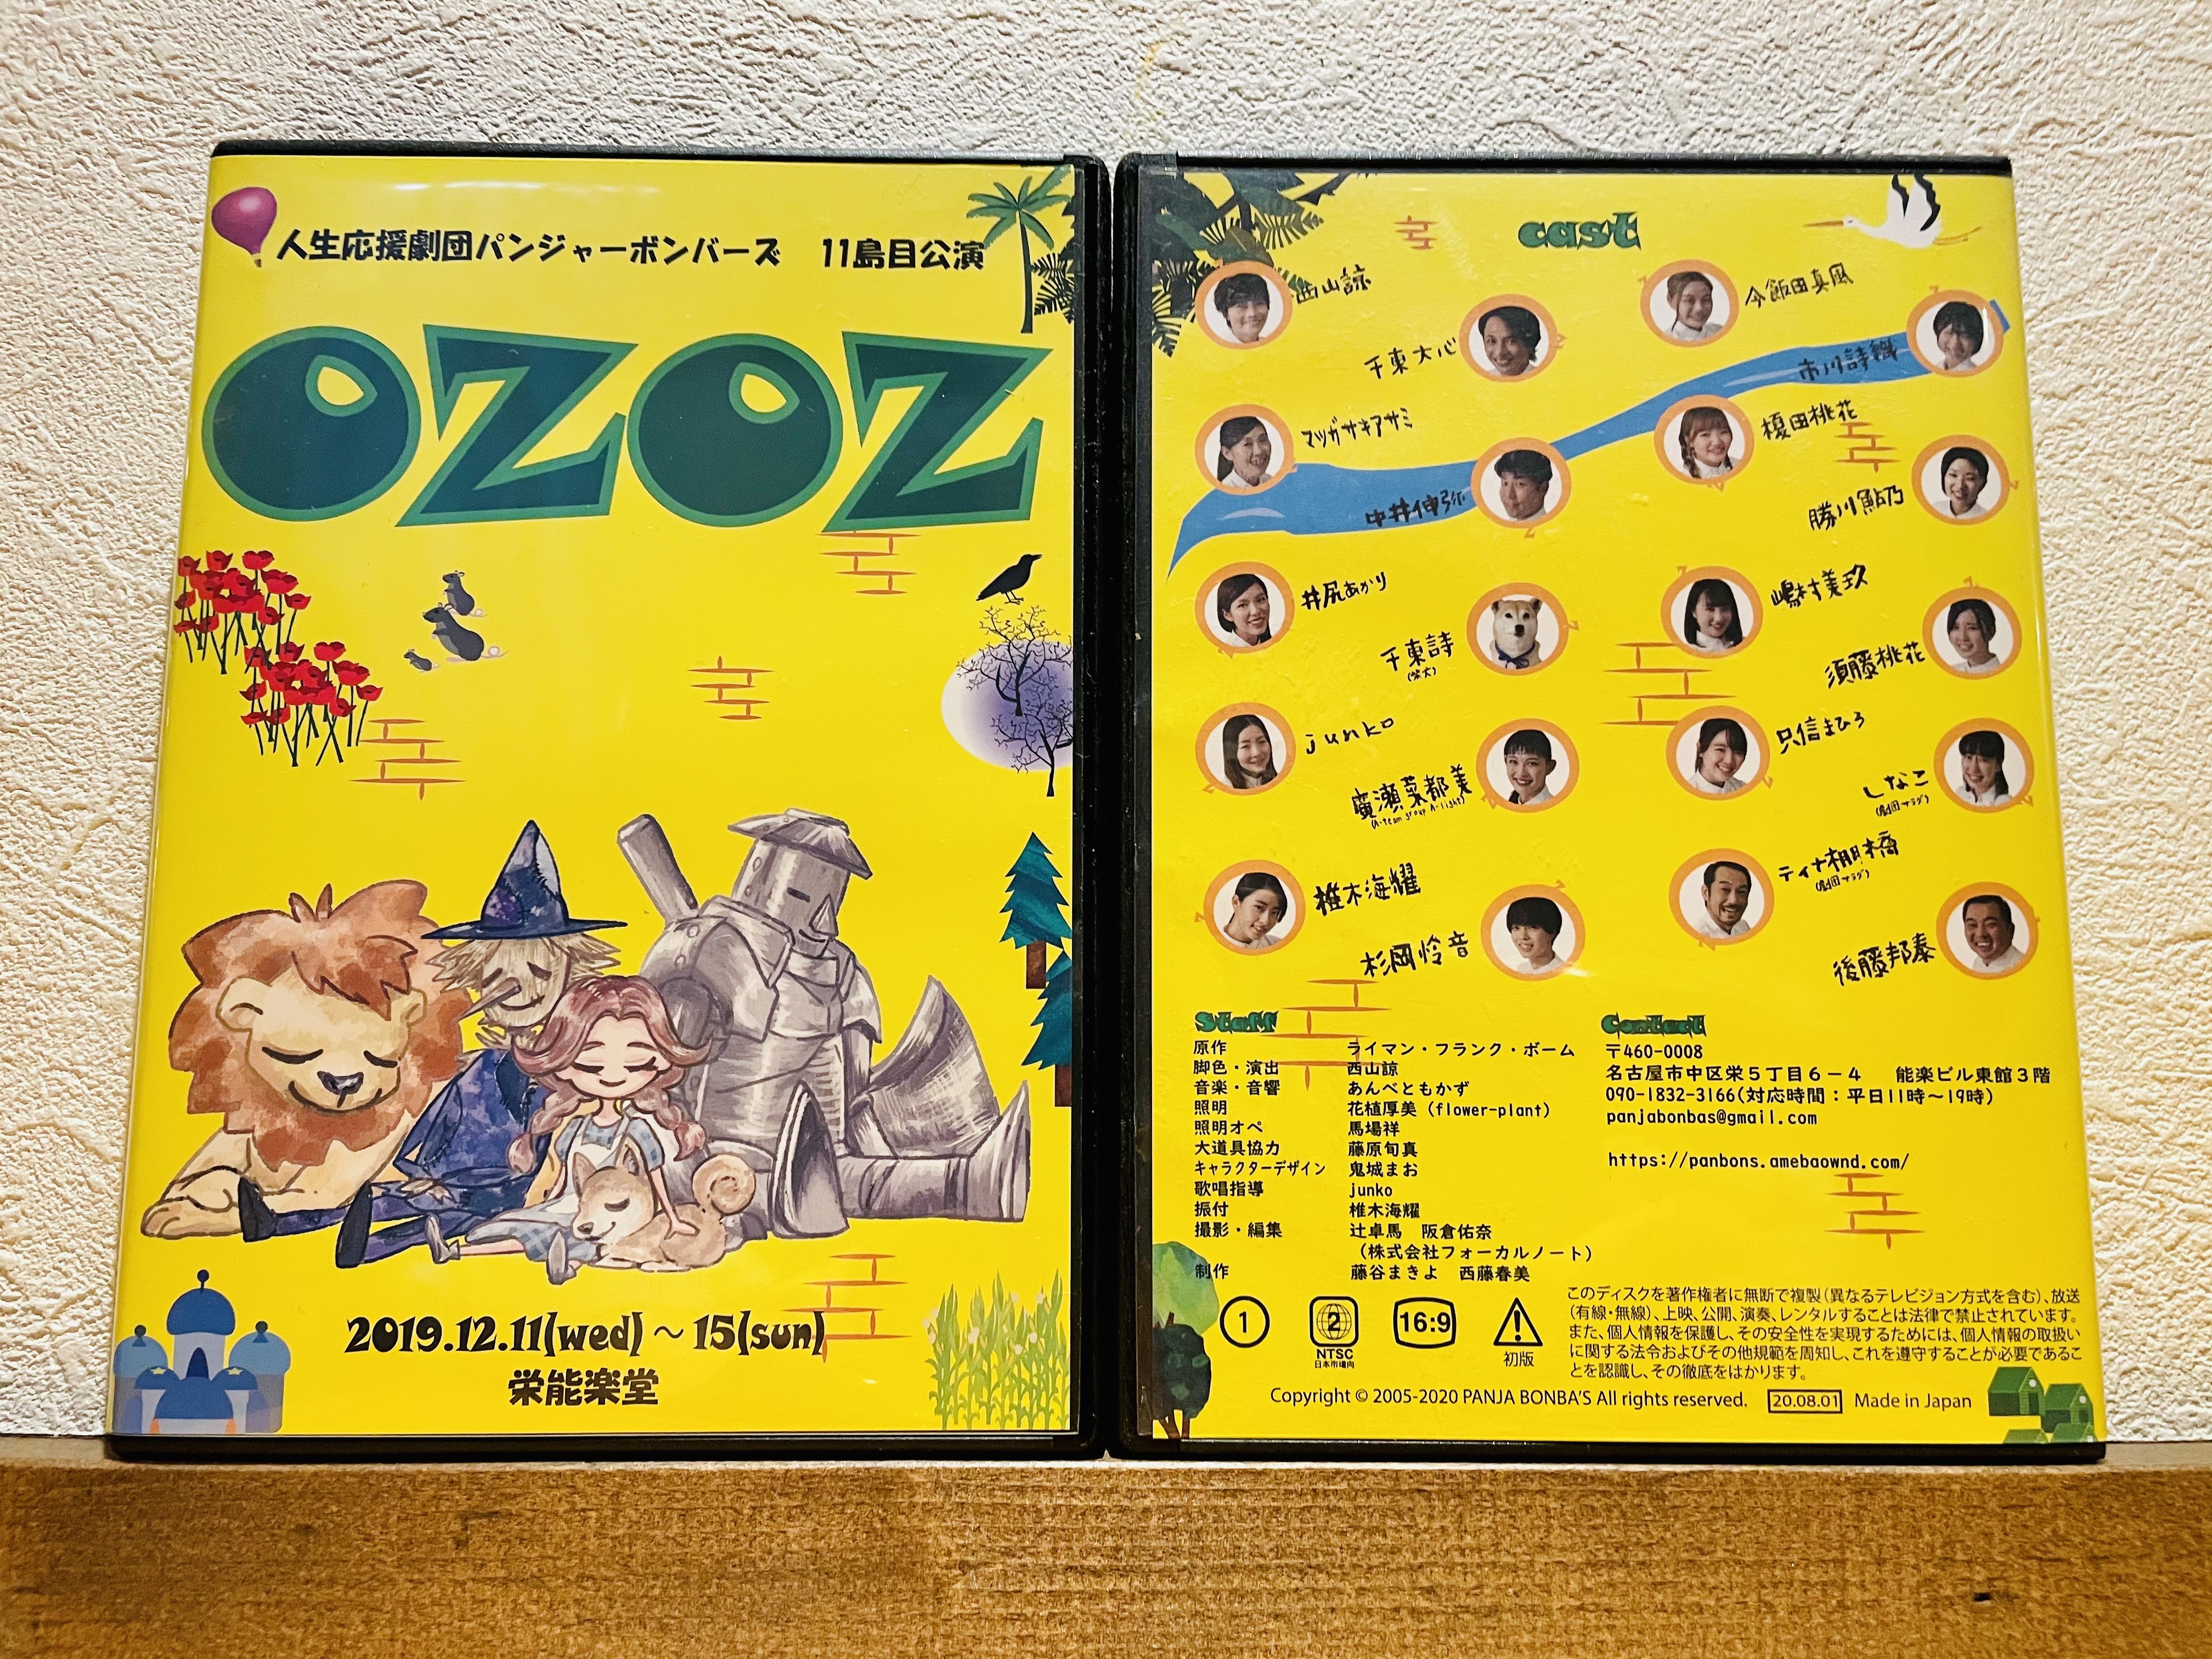 OZOZ』DVD | 人生応援劇団パンジャーボンバーズ公式ホームページ